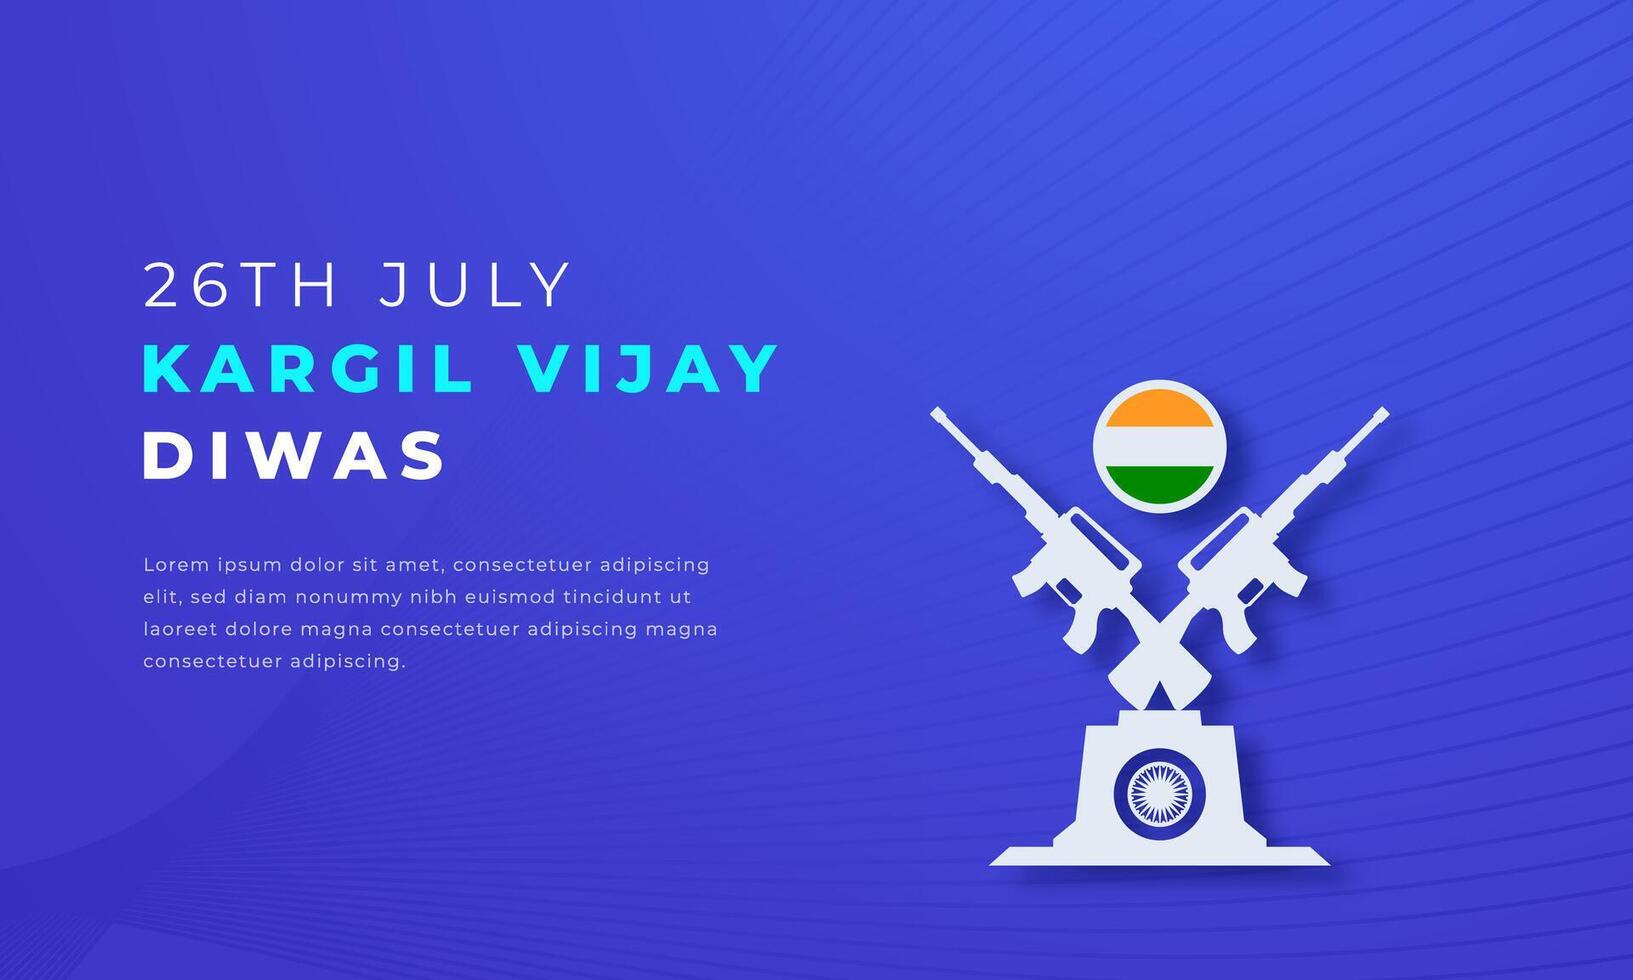 Kargil vijay diwas papel cortar estilo vetor Projeto ilustração para fundo, poster, bandeira, anúncio, cumprimento cartão